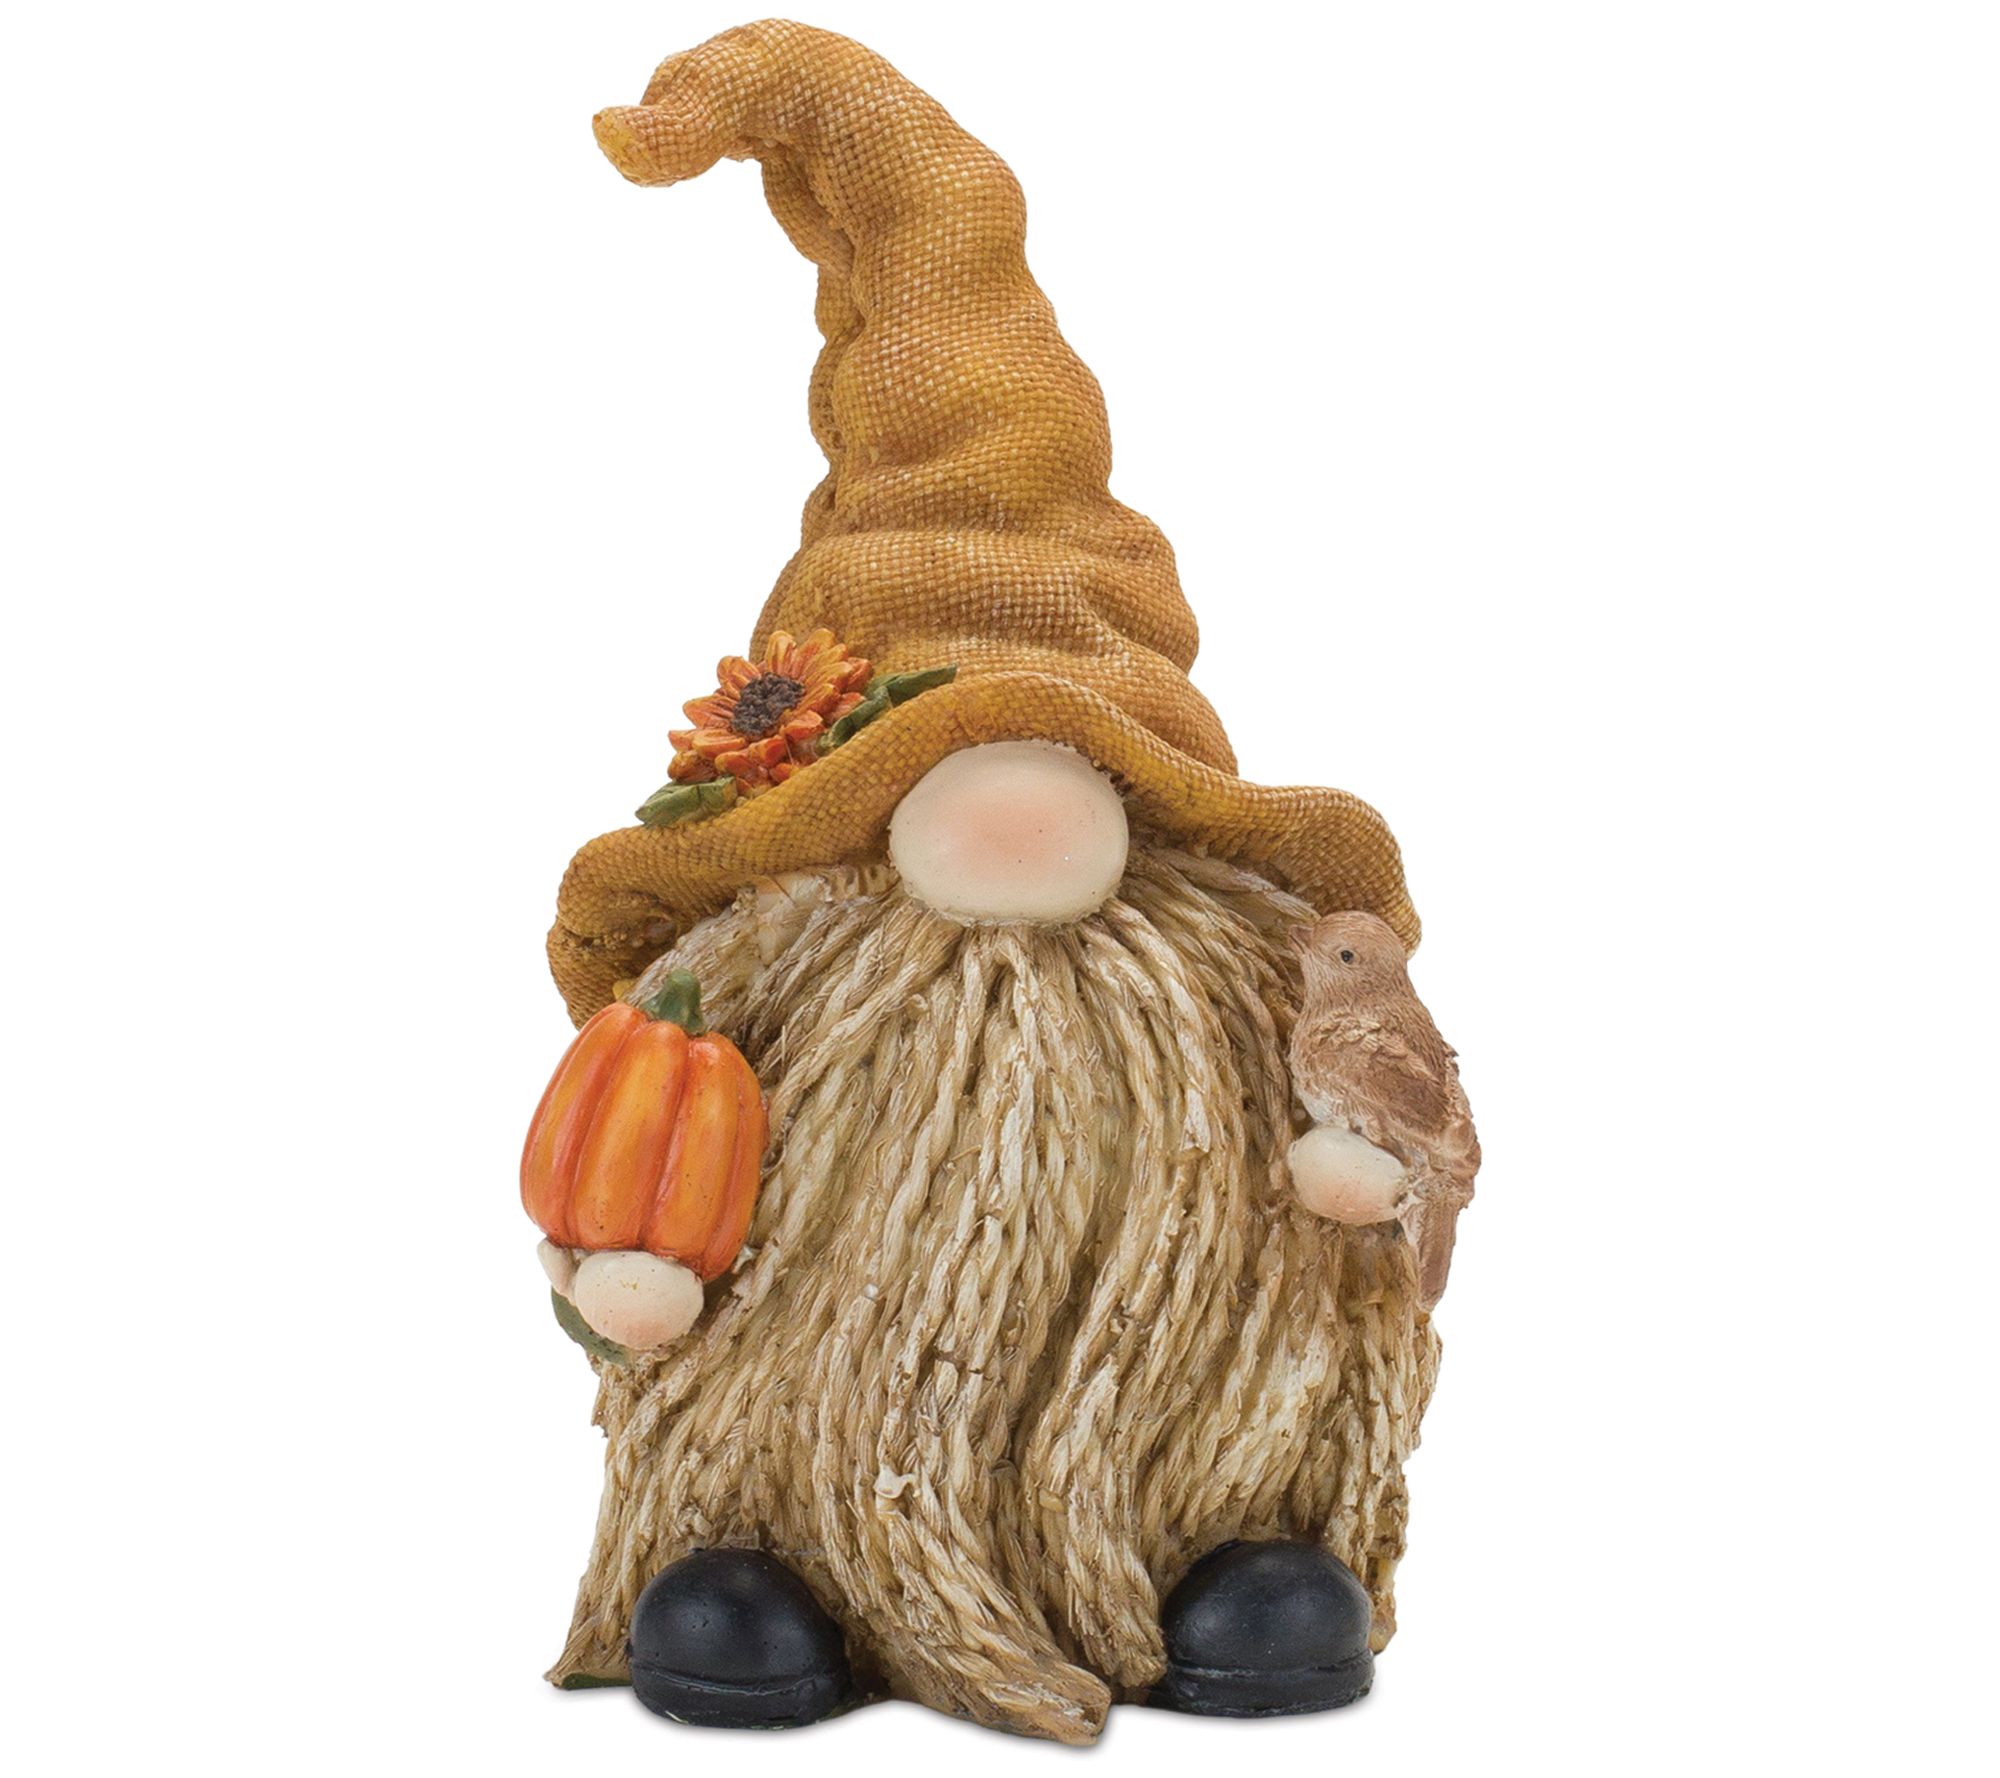 Melrose Fall Harvest Gnome Figurine - Set of Two - QVC.com